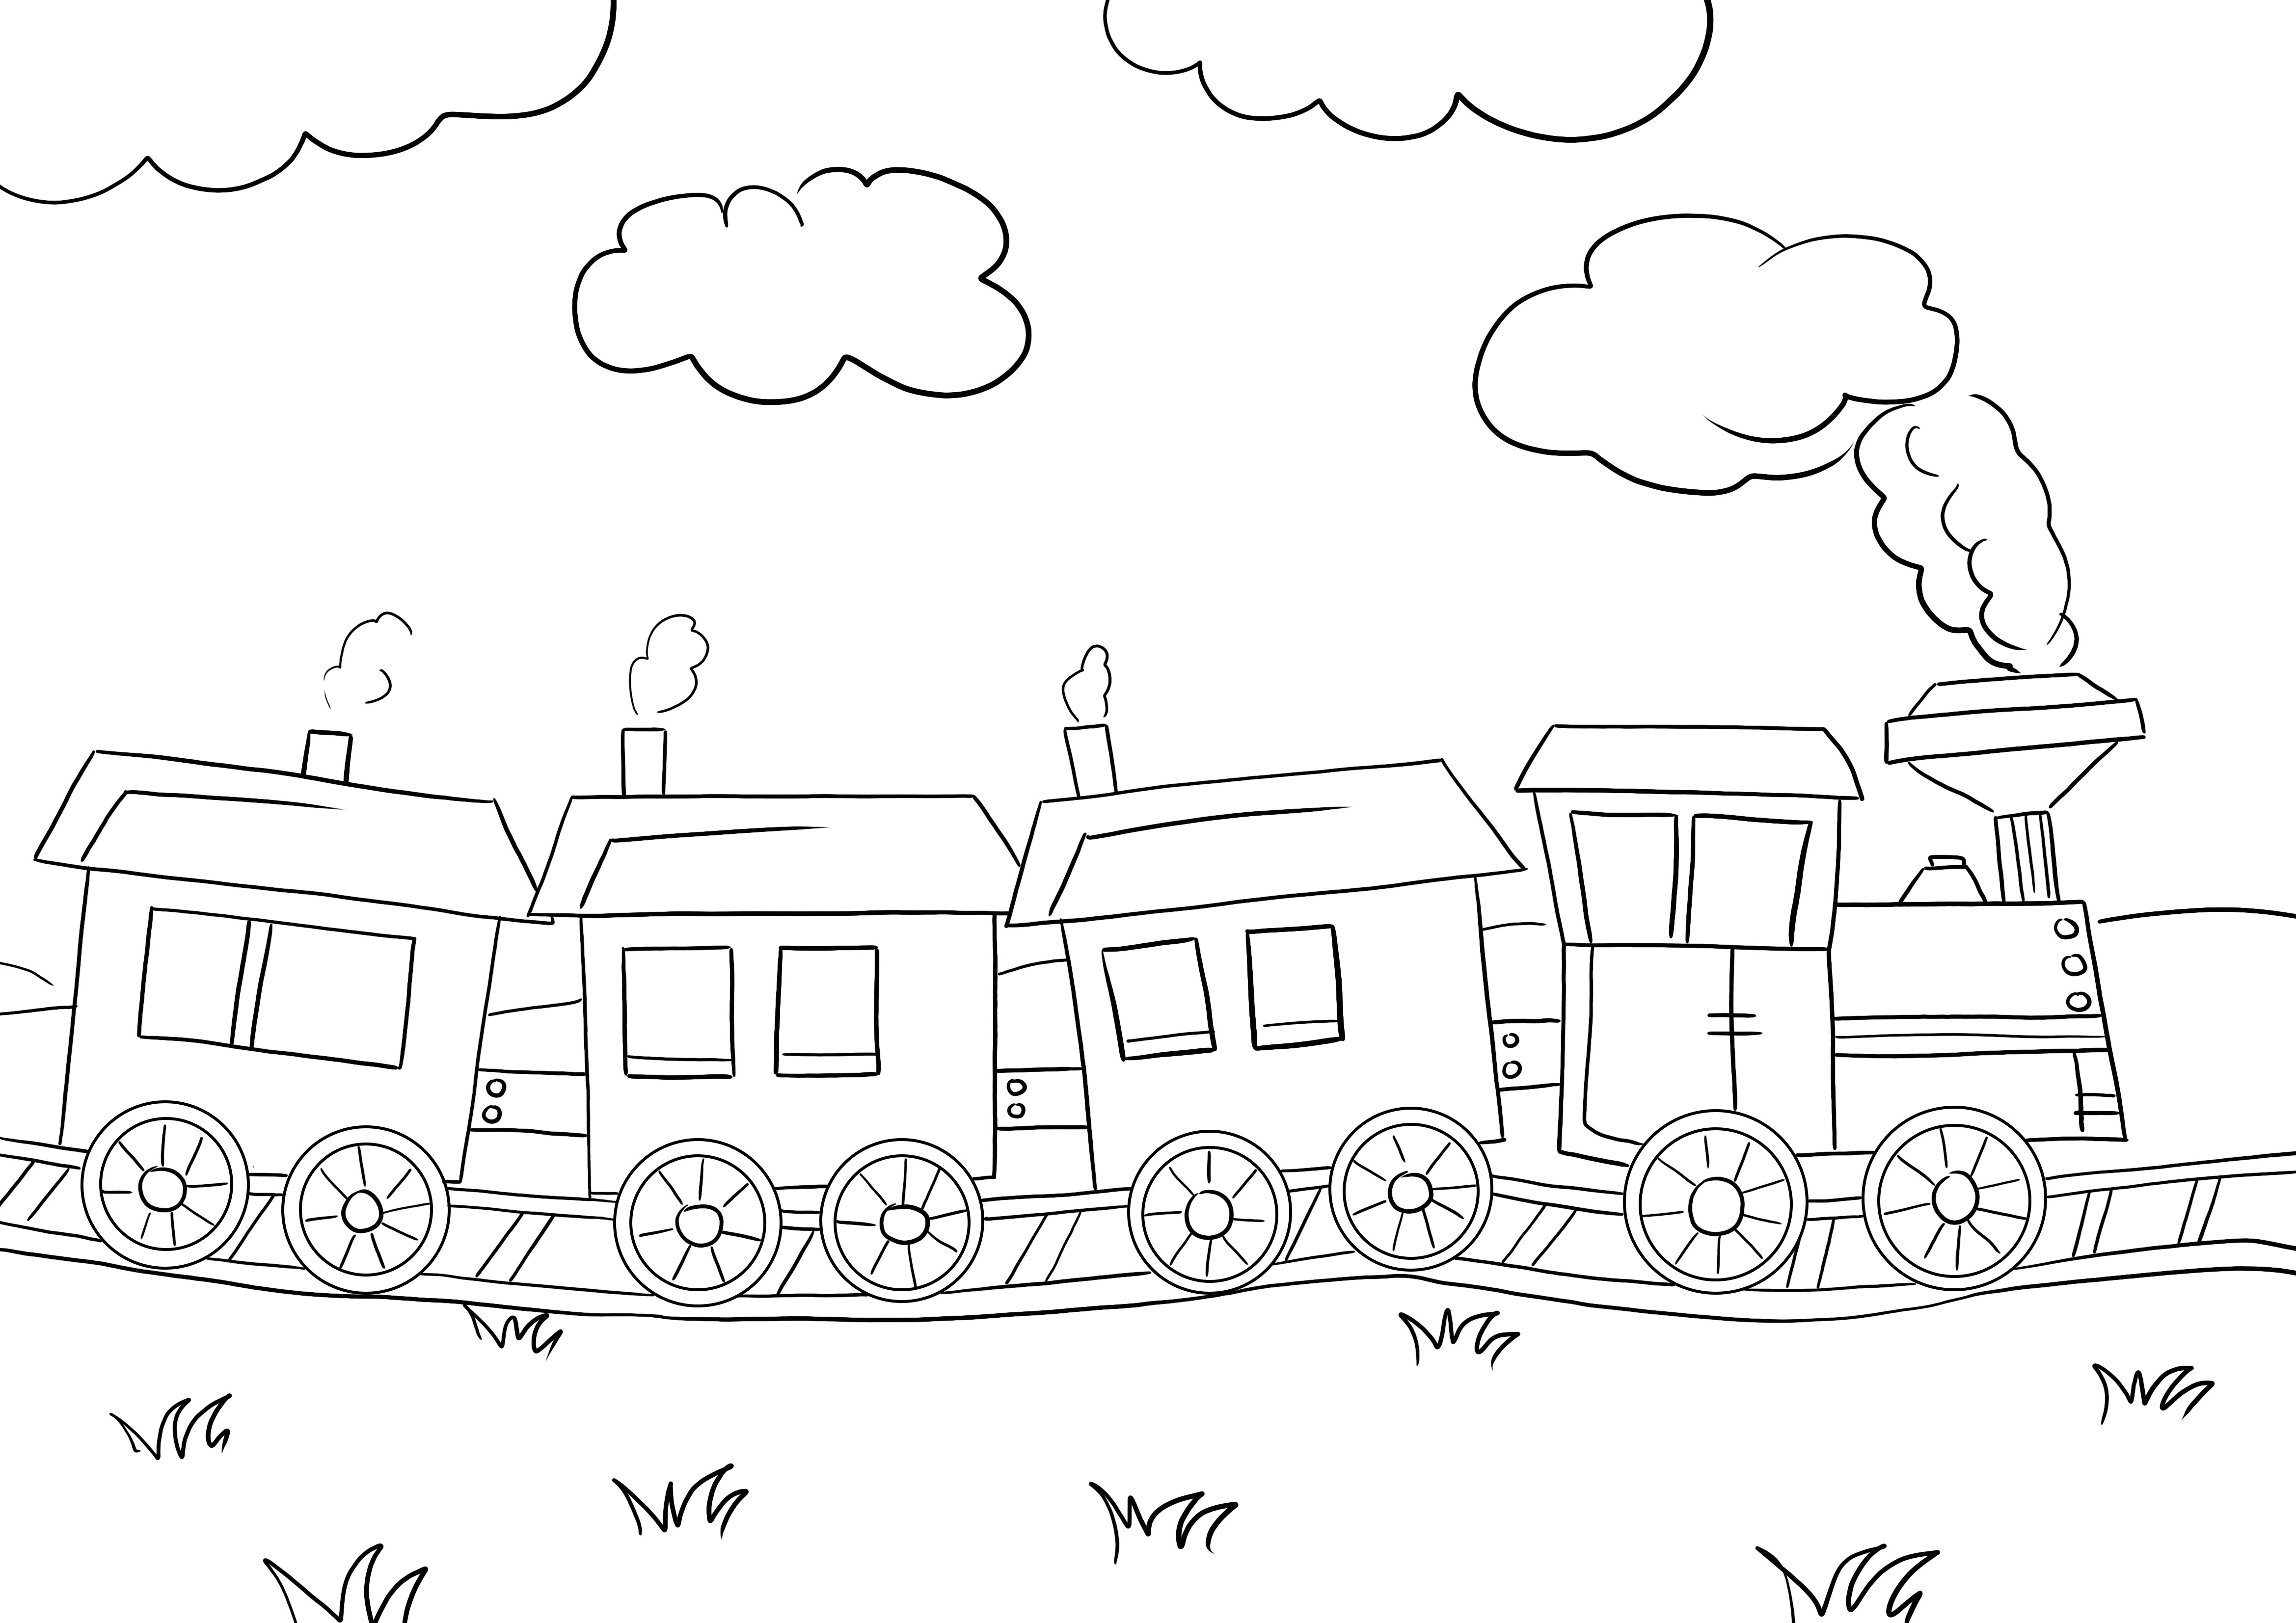 Imprimable gratuitement d'un train rapide pour que les enfants colorient et apprennent en s'amusant